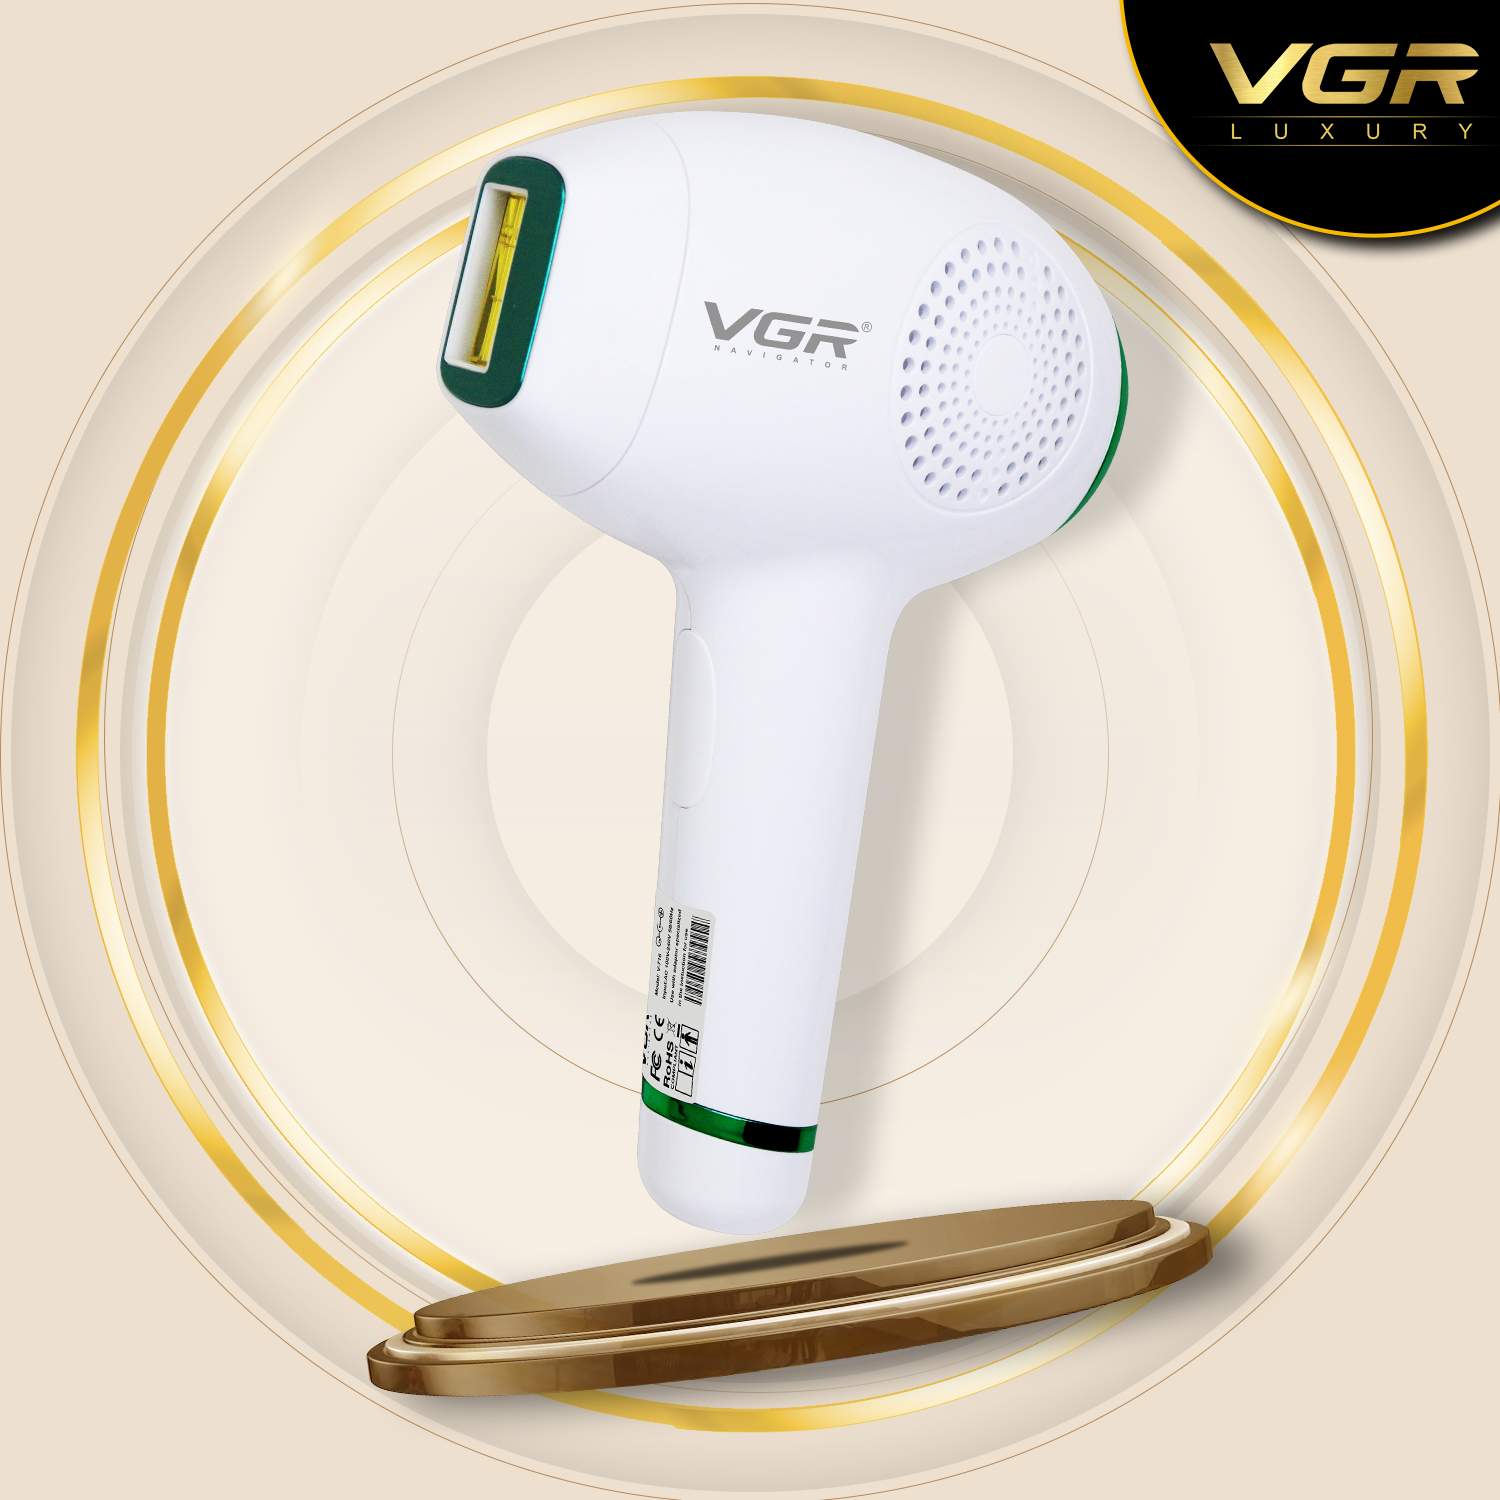 VGR, VGRindia, VGRofficial, V-716